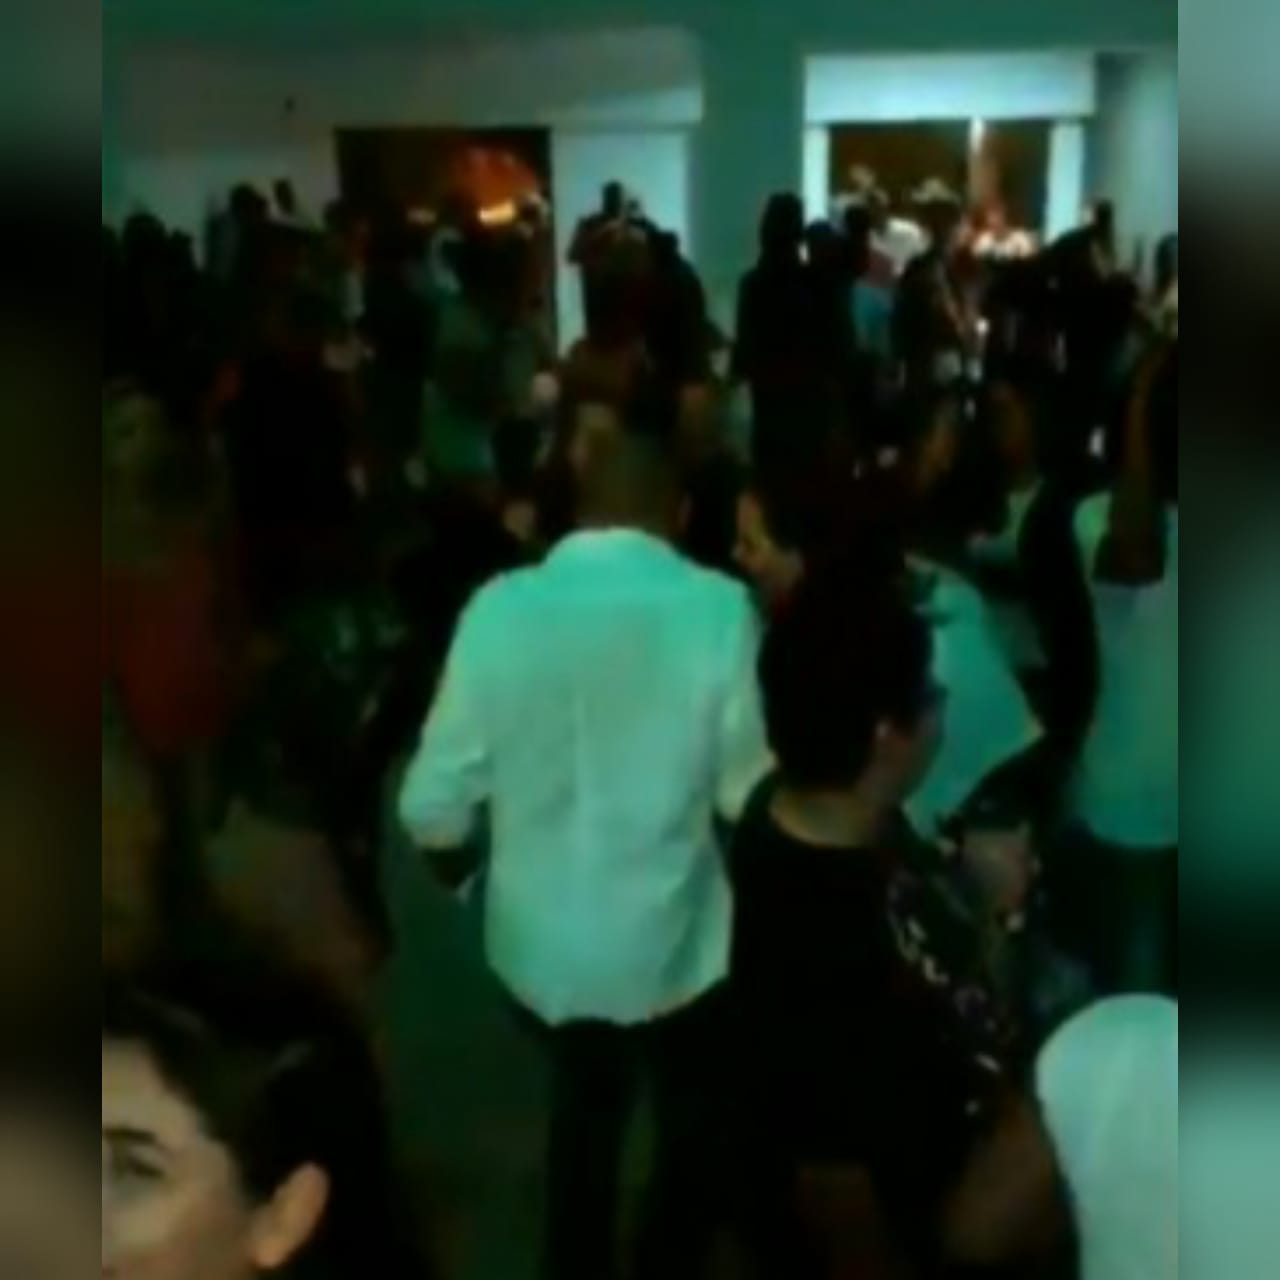 Show ao vivo, aglomeração e clientes sem máscaras. Assim foi cenário registrado em um bar no Setor Vila Jussara, no Centro de Anápolis. (Foto: reprodução)